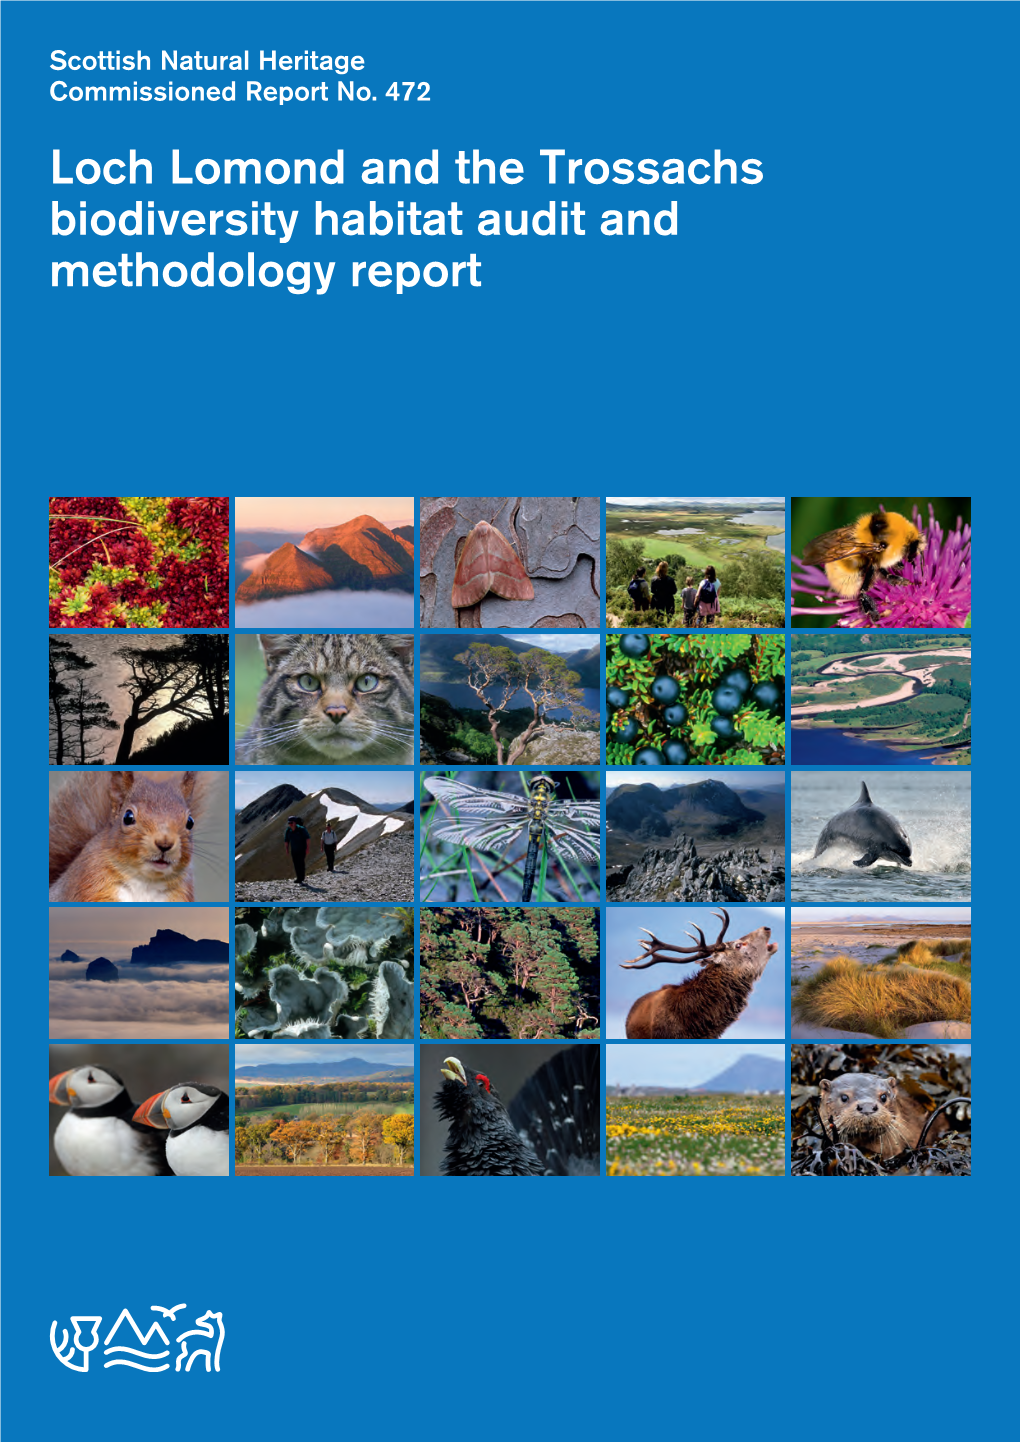 Biodiversity Habitat Audit 2012 (975.5